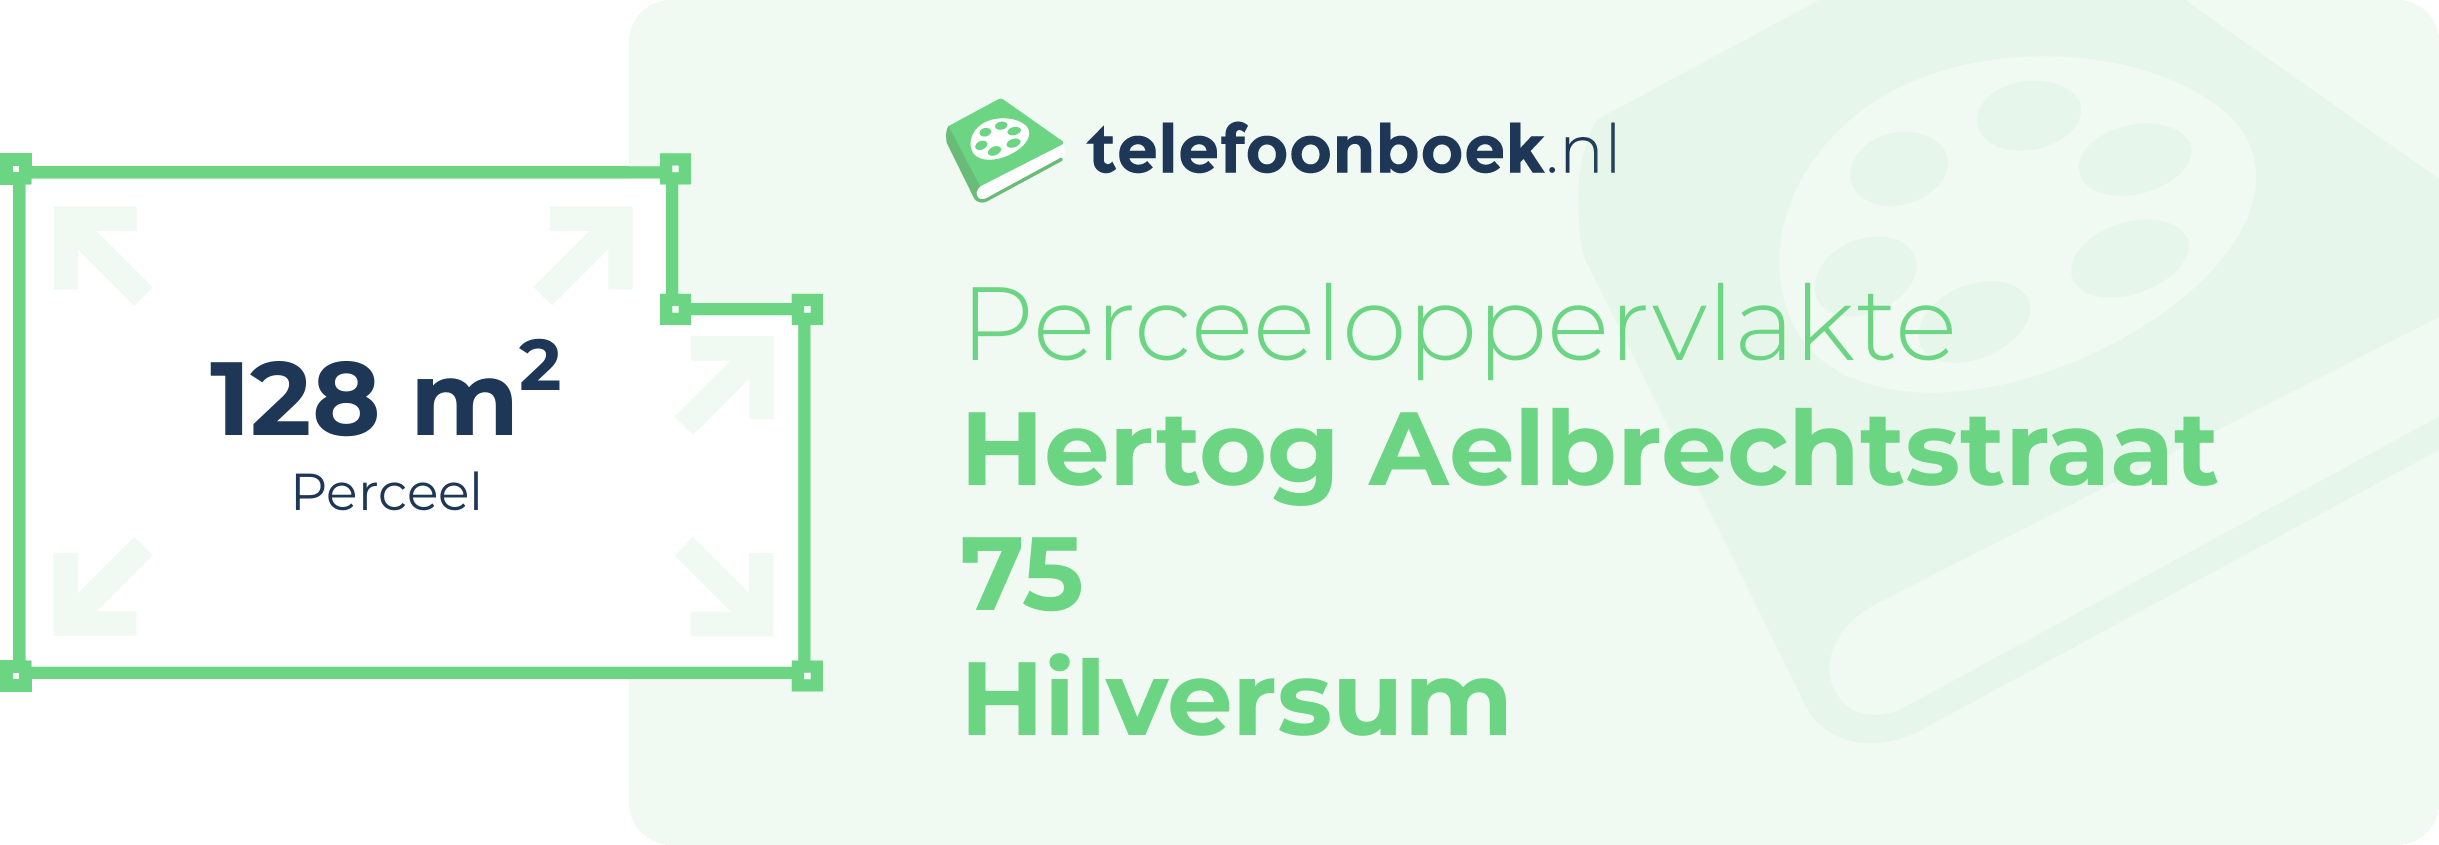 Perceeloppervlakte Hertog Aelbrechtstraat 75 Hilversum